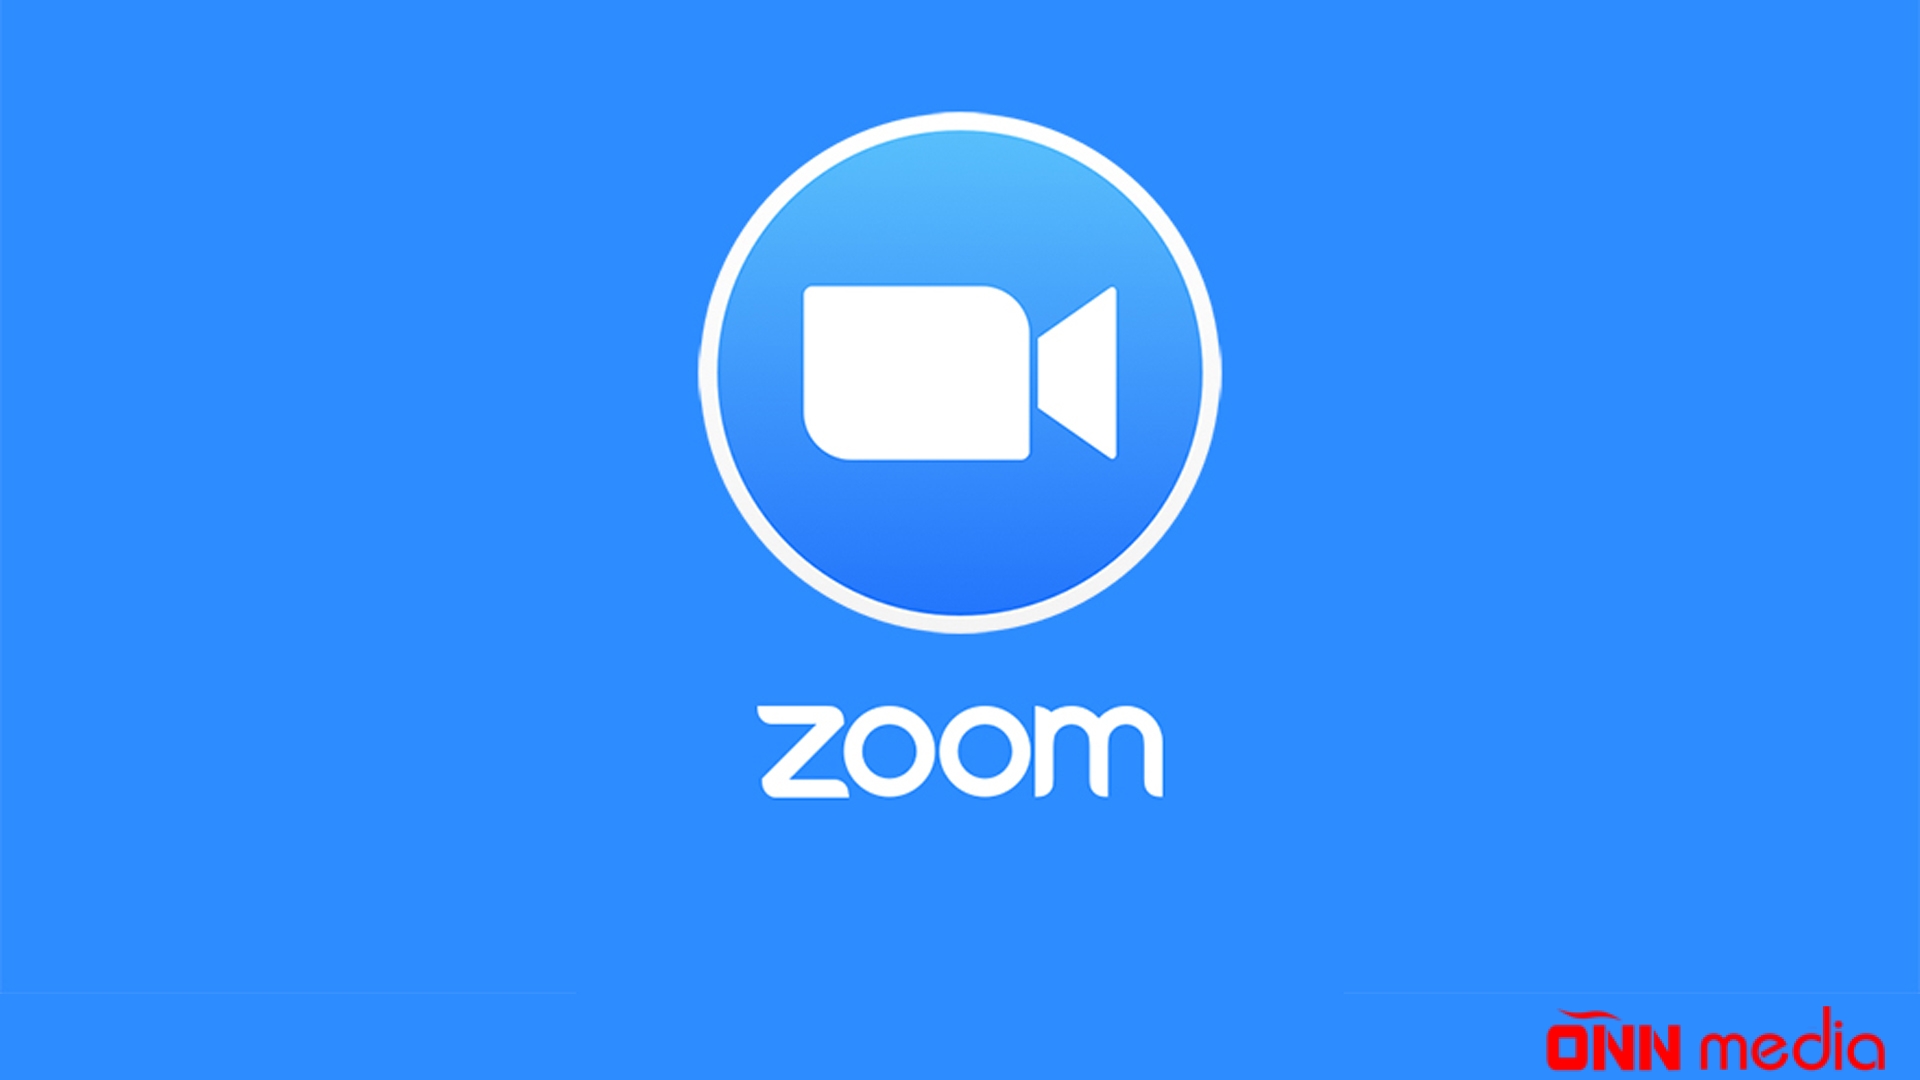 “Zoom” videokonfrans xidmətinin işində qüsurlar yaranıb